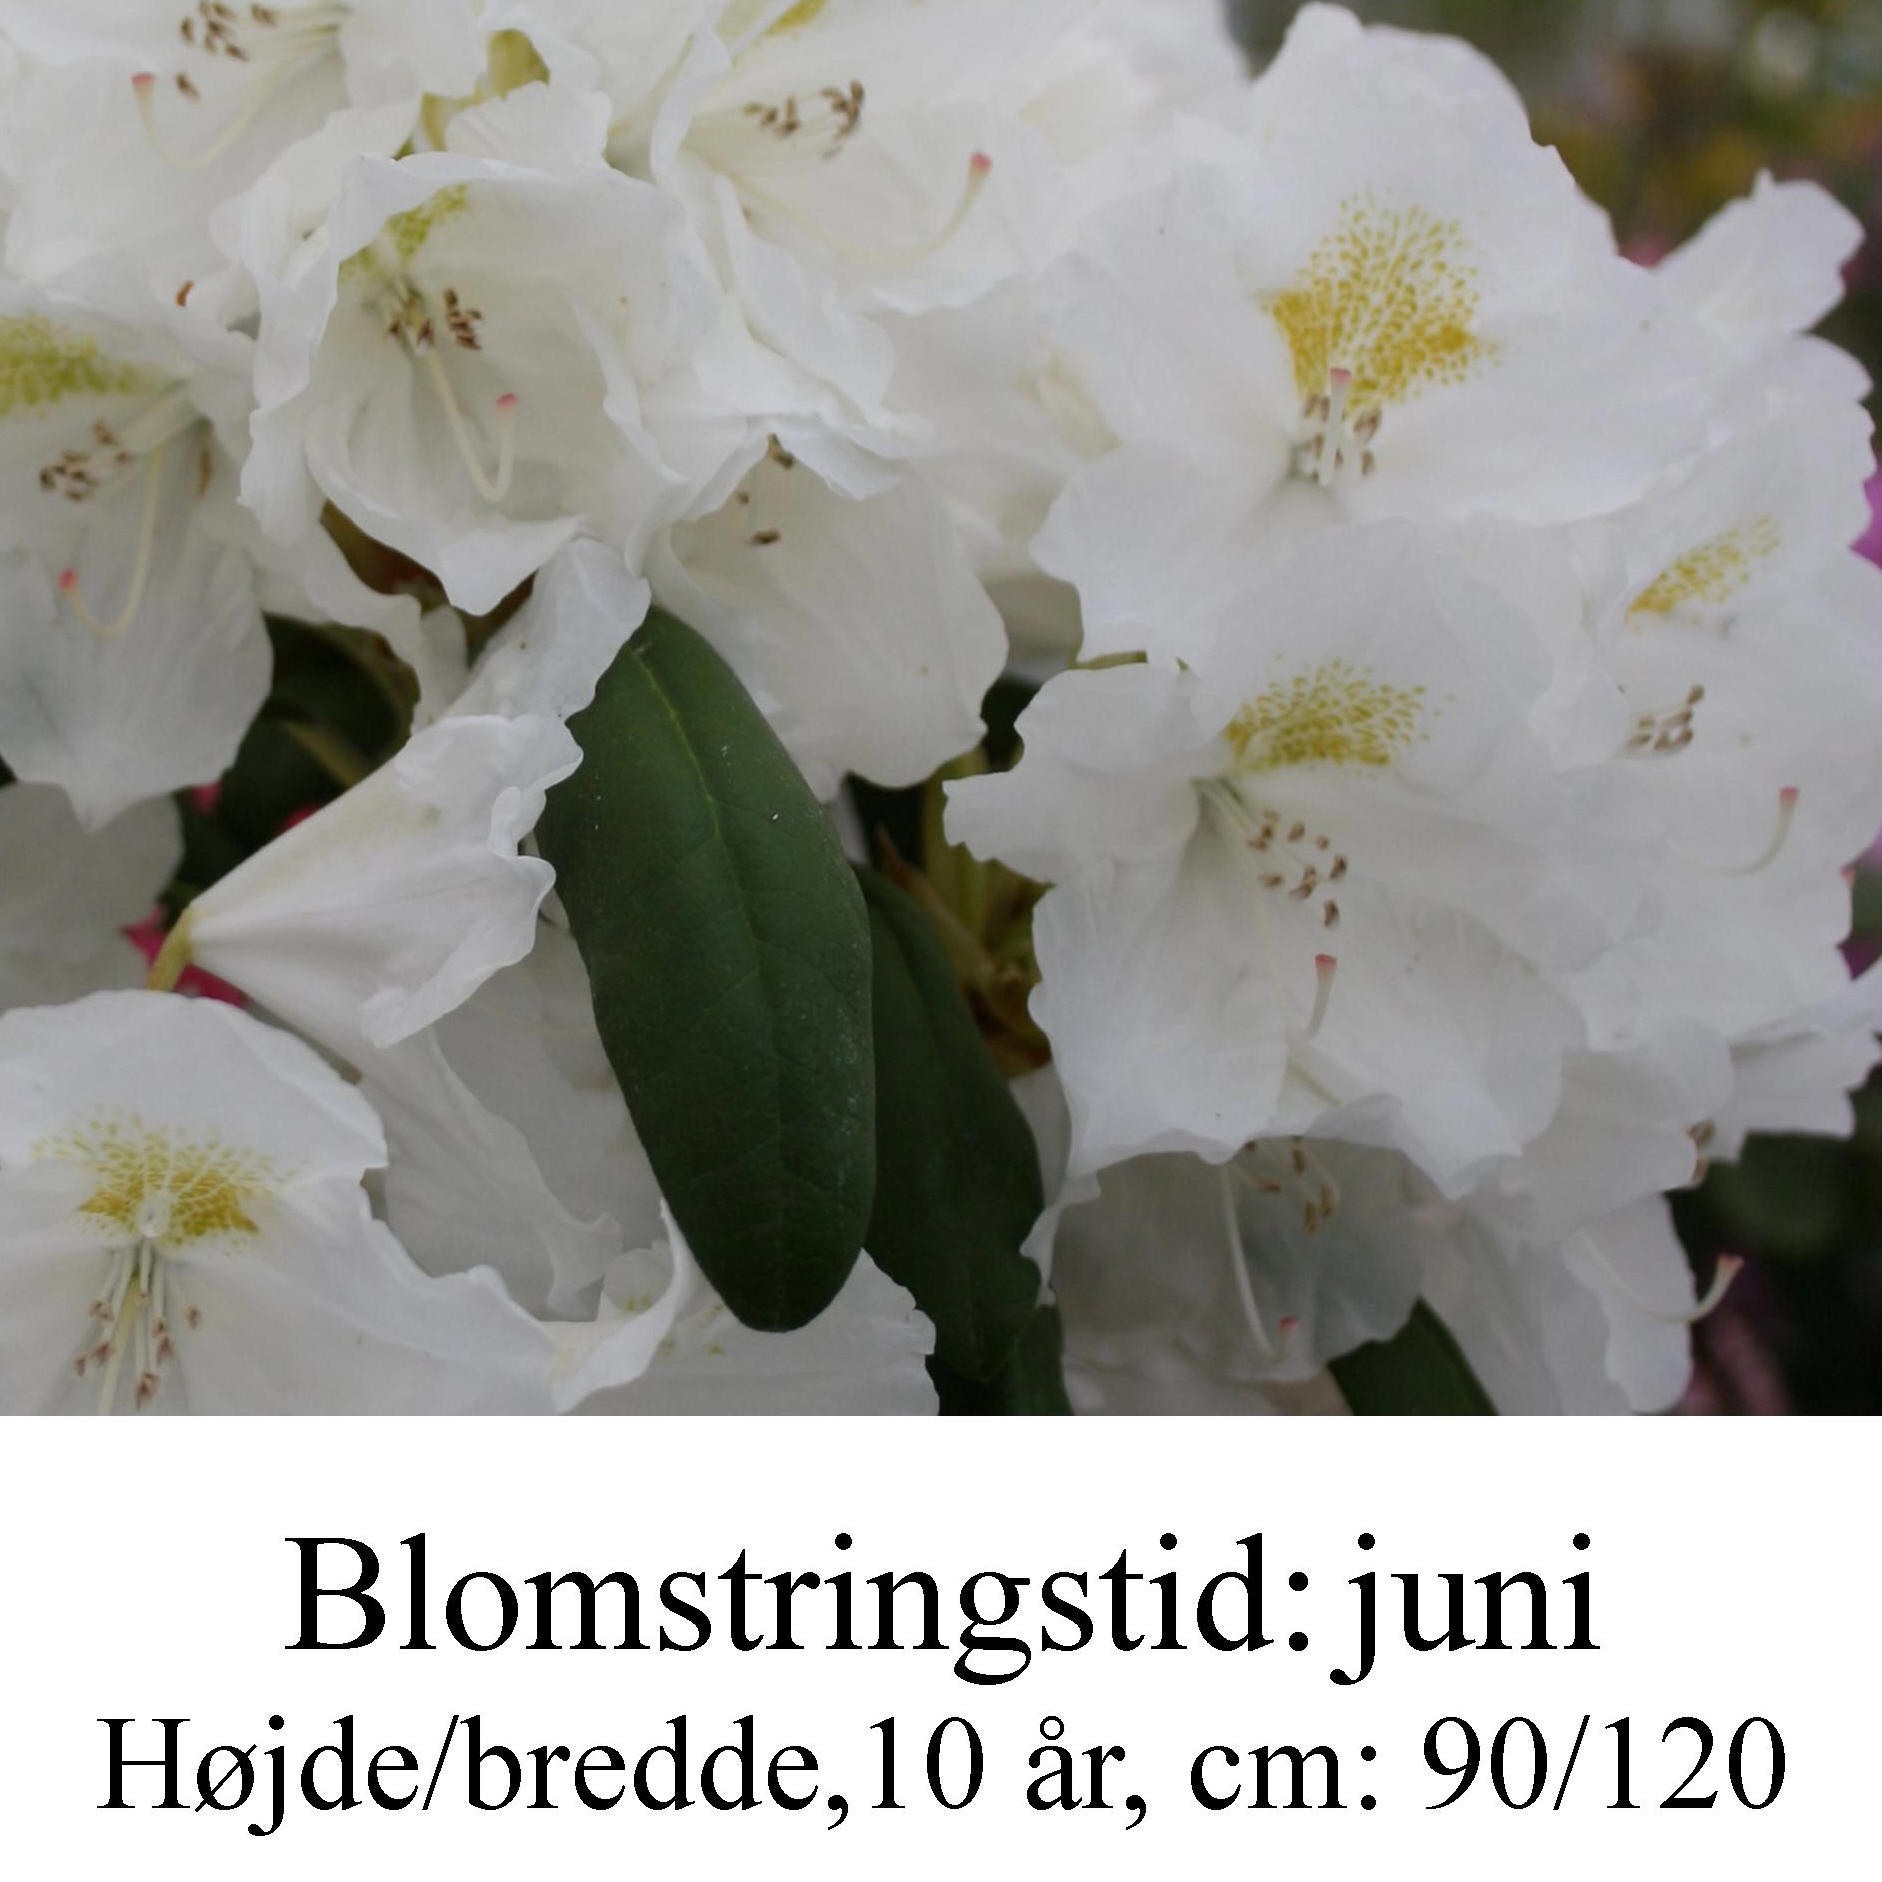 rhododendron Schwanensee